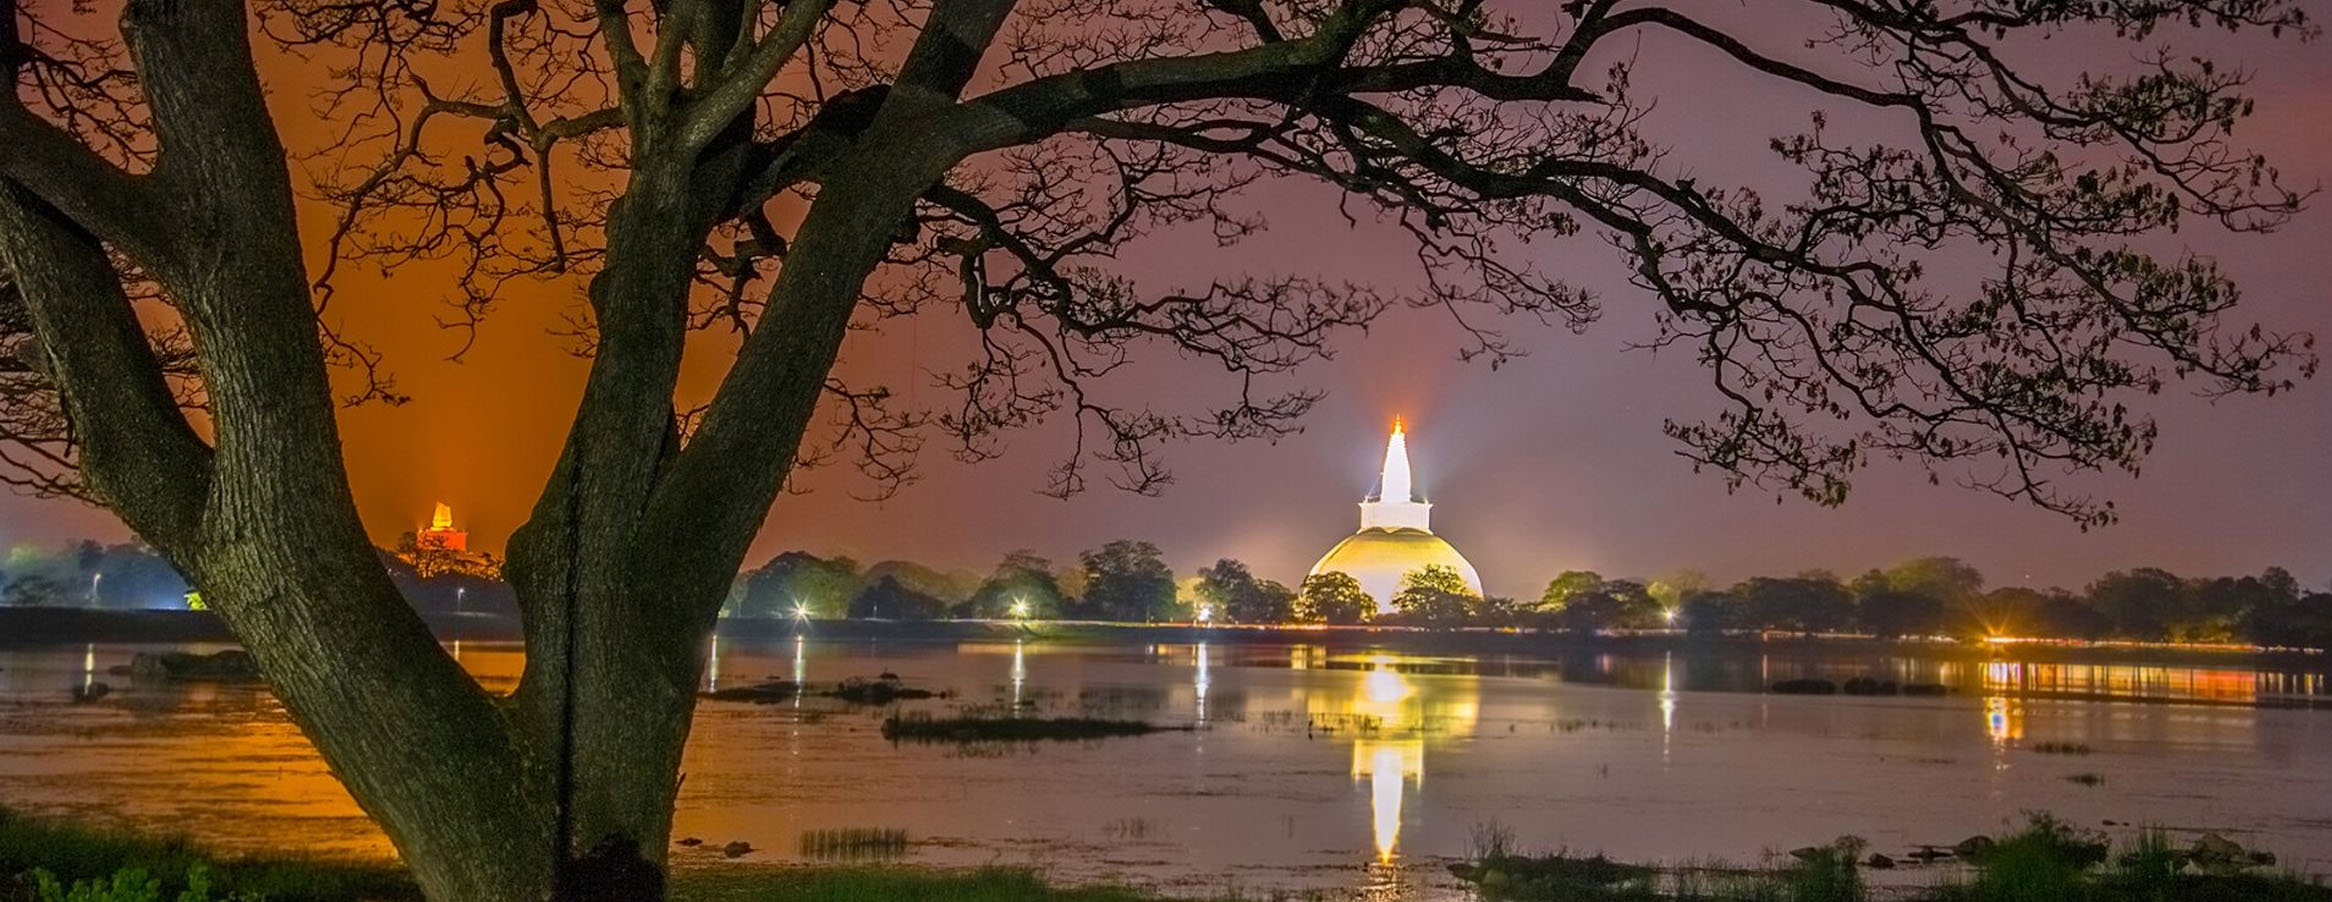 Anuradhapura Tour Sri Lanka| Rock Lanka Tours